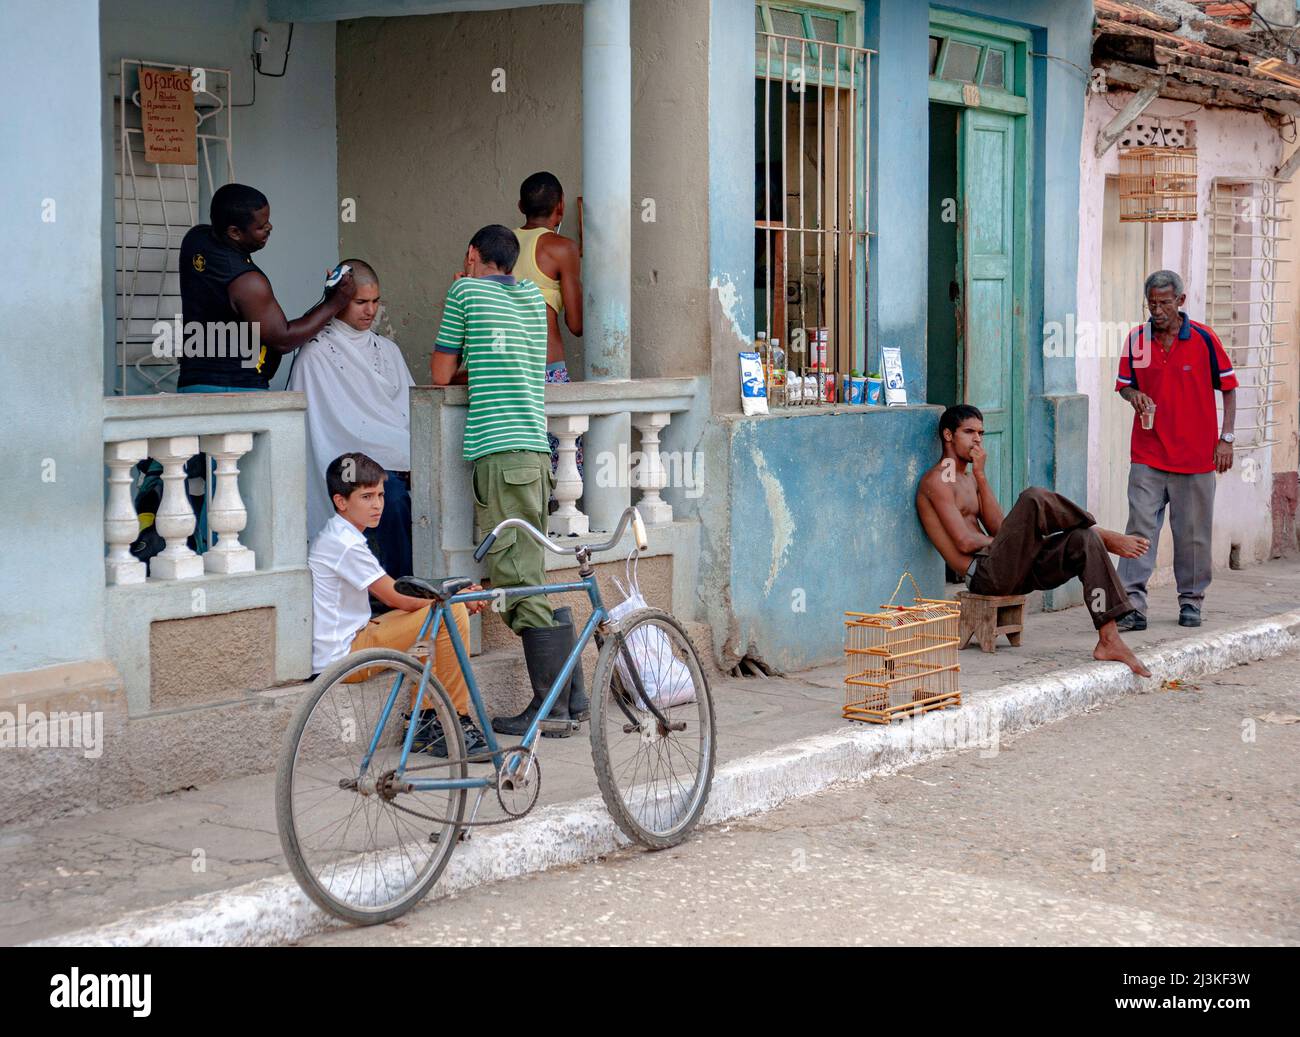 Molte cose che accadono in un negozio di barbiere sul portico anteriore di una casa e vicino ad un negozio di alimentari di prodotti alimentari a Trinidad, Cuba. Foto Stock